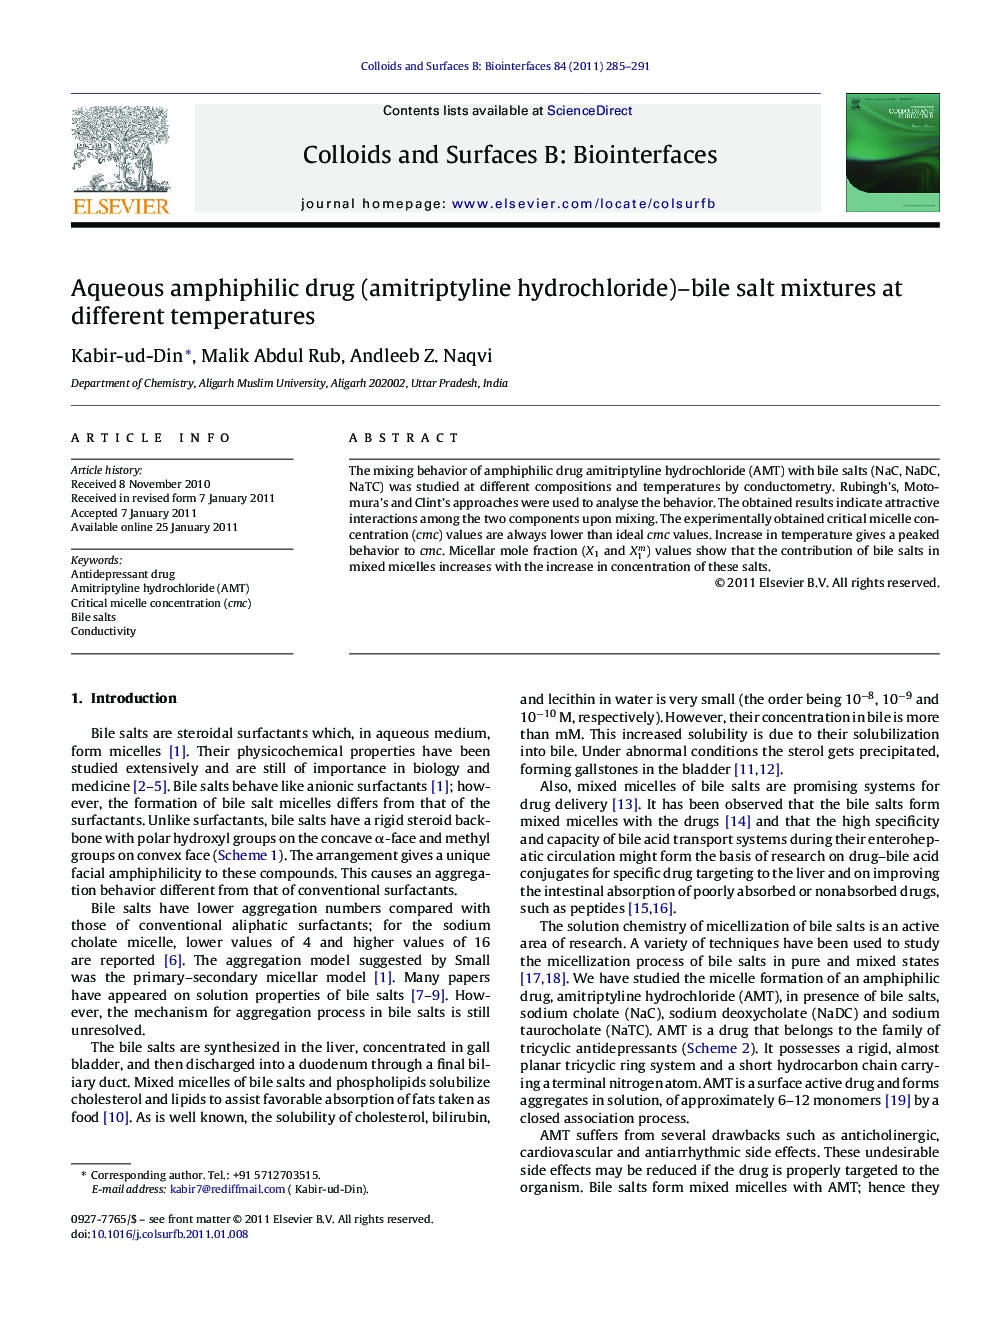 Aqueous amphiphilic drug (amitriptyline hydrochloride)–bile salt mixtures at different temperatures